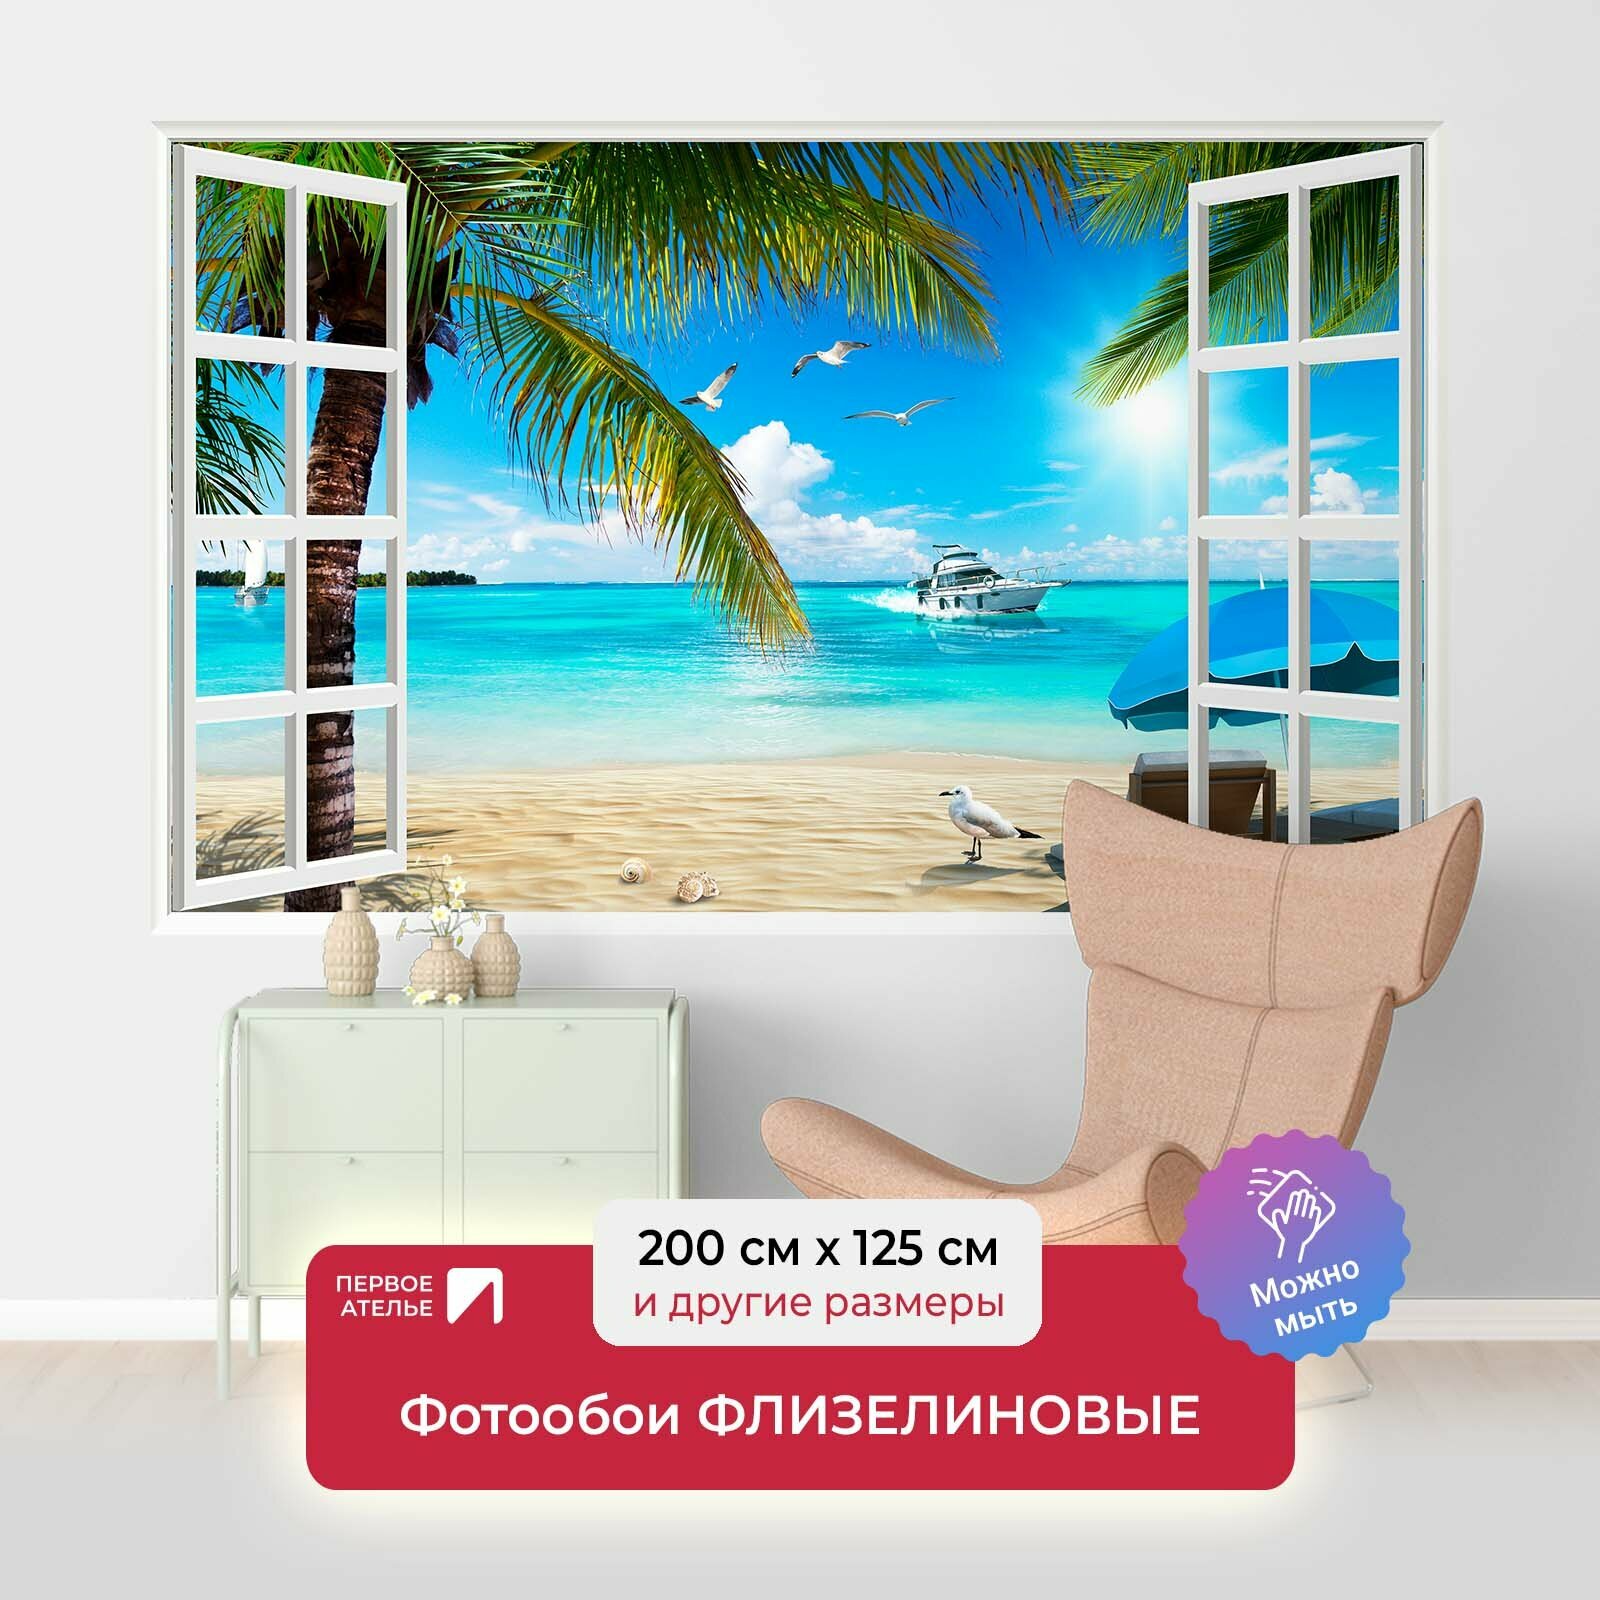 Фотообои на стену первое ателье "Пляж с пальмами в открытом окне" 200х125 см (ШхВ), флизелиновые Premium